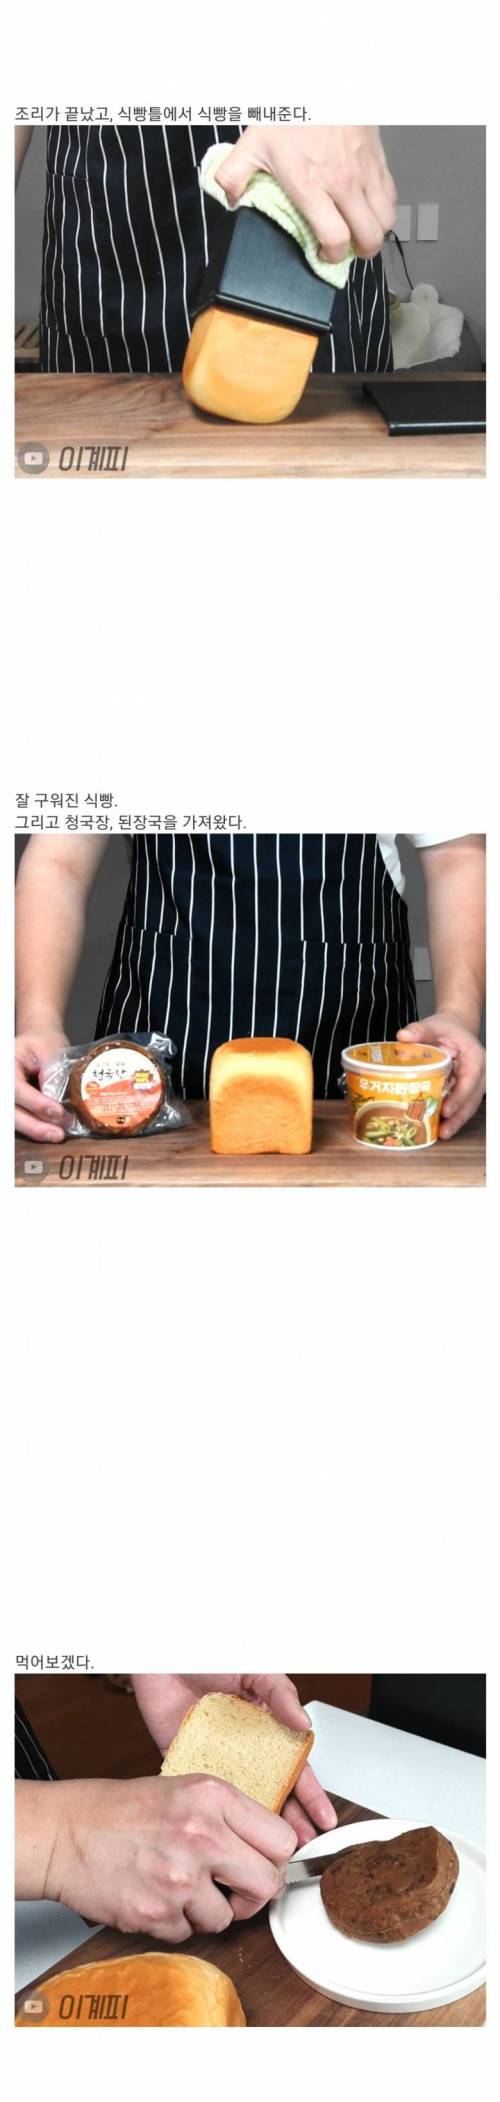 [스압] 버터 대신 청국장 발라먹는 식빵.jpg